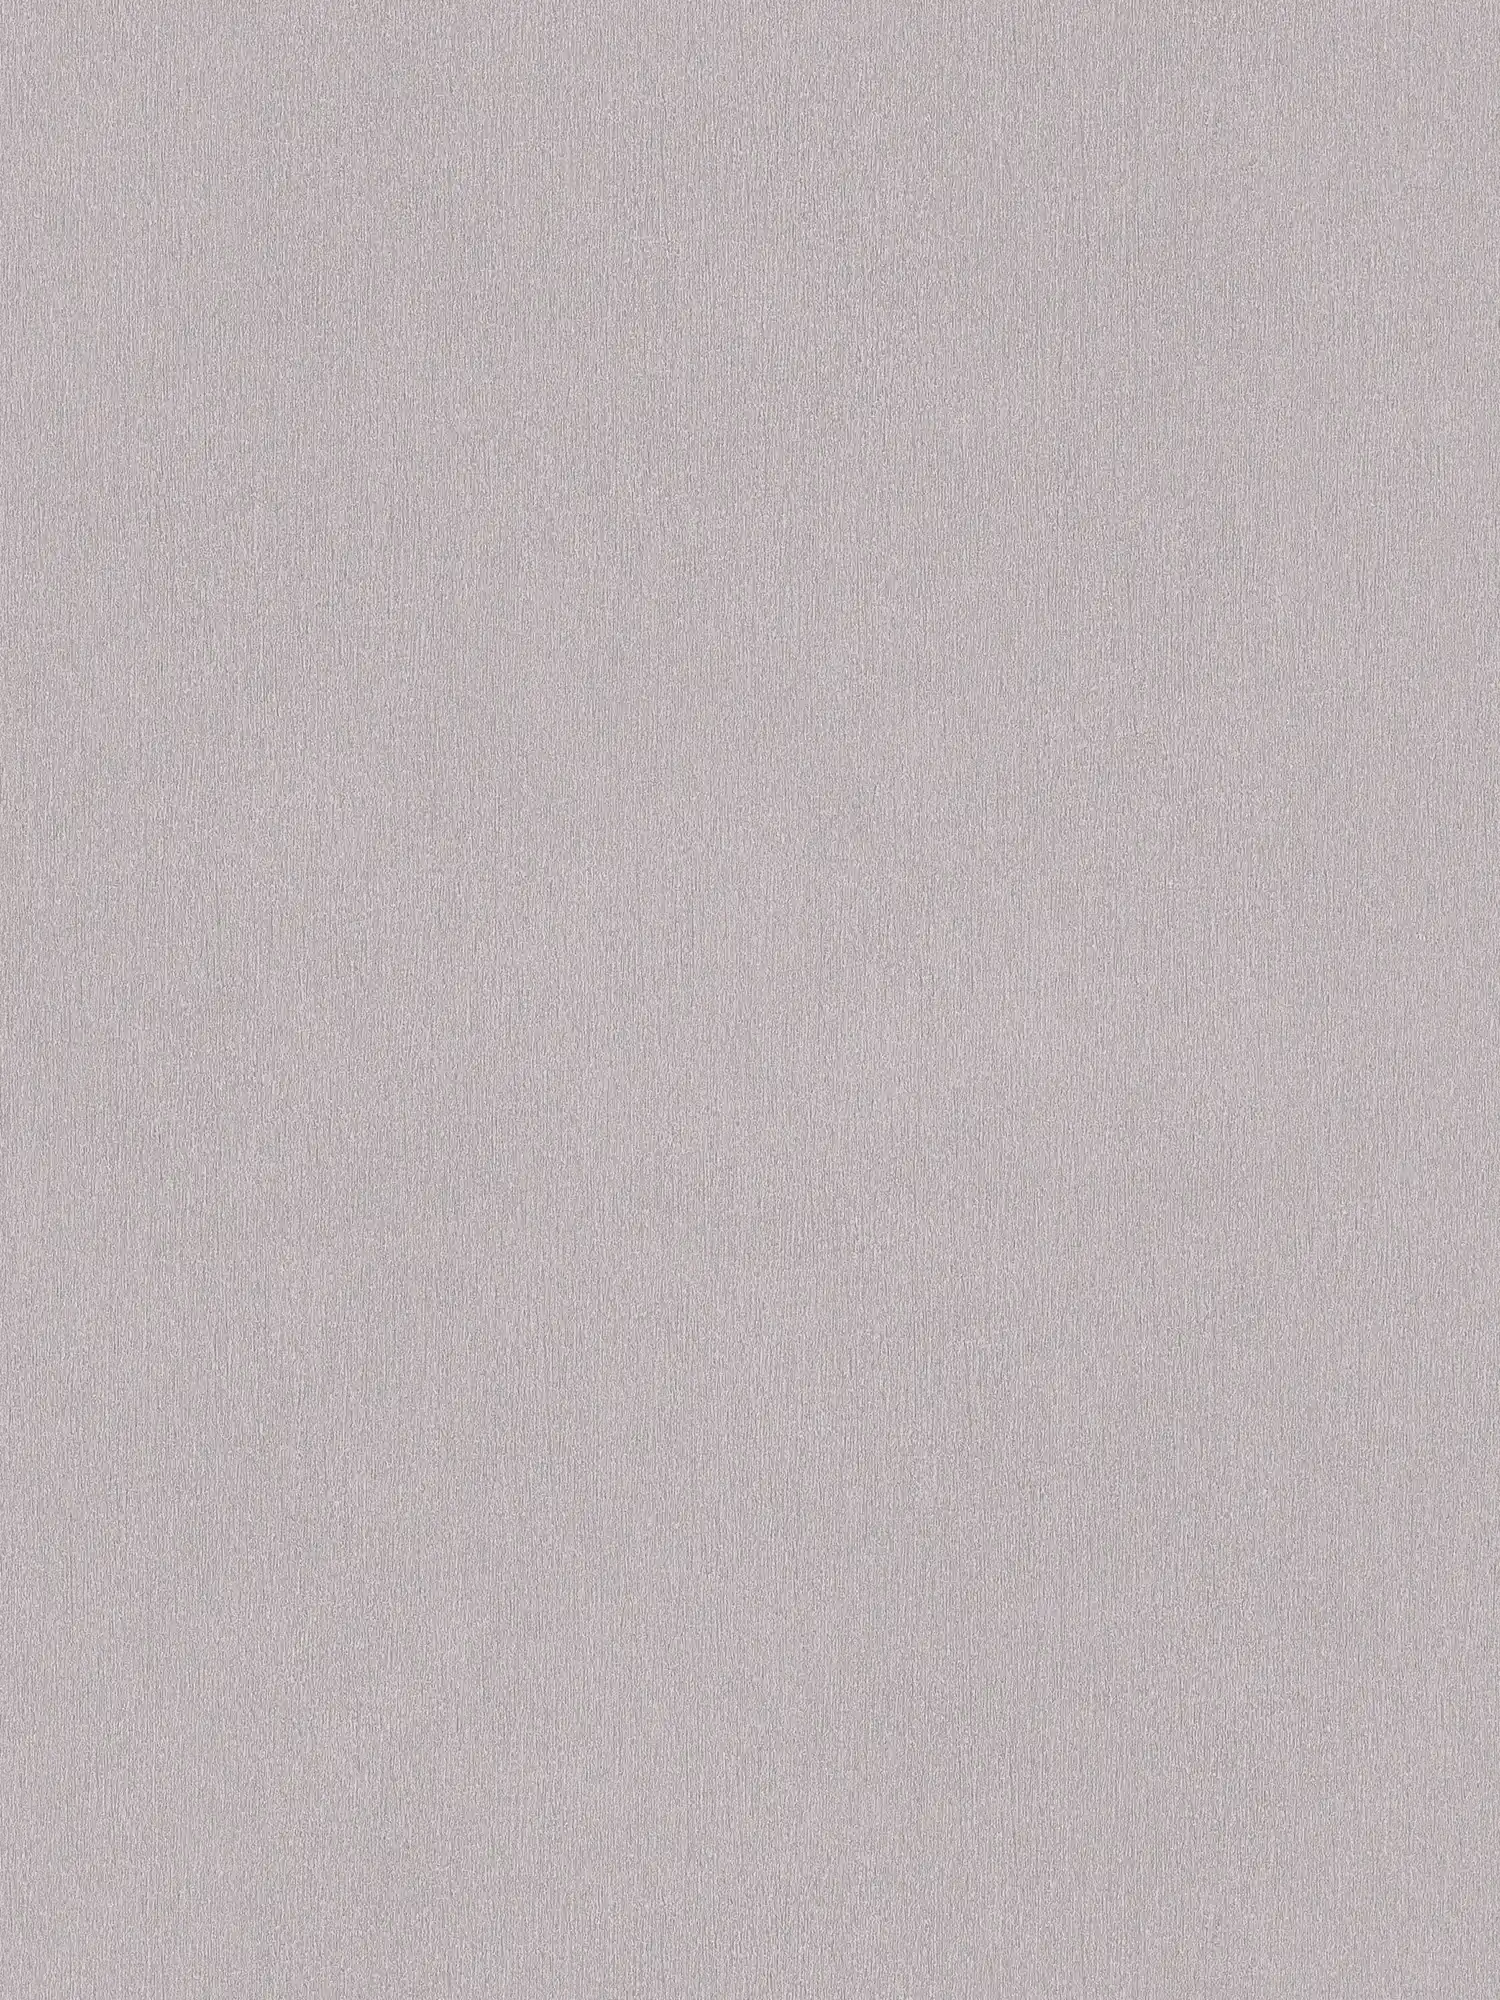 Papel pintado unitario gris con sombreado de color, no tejido liso
